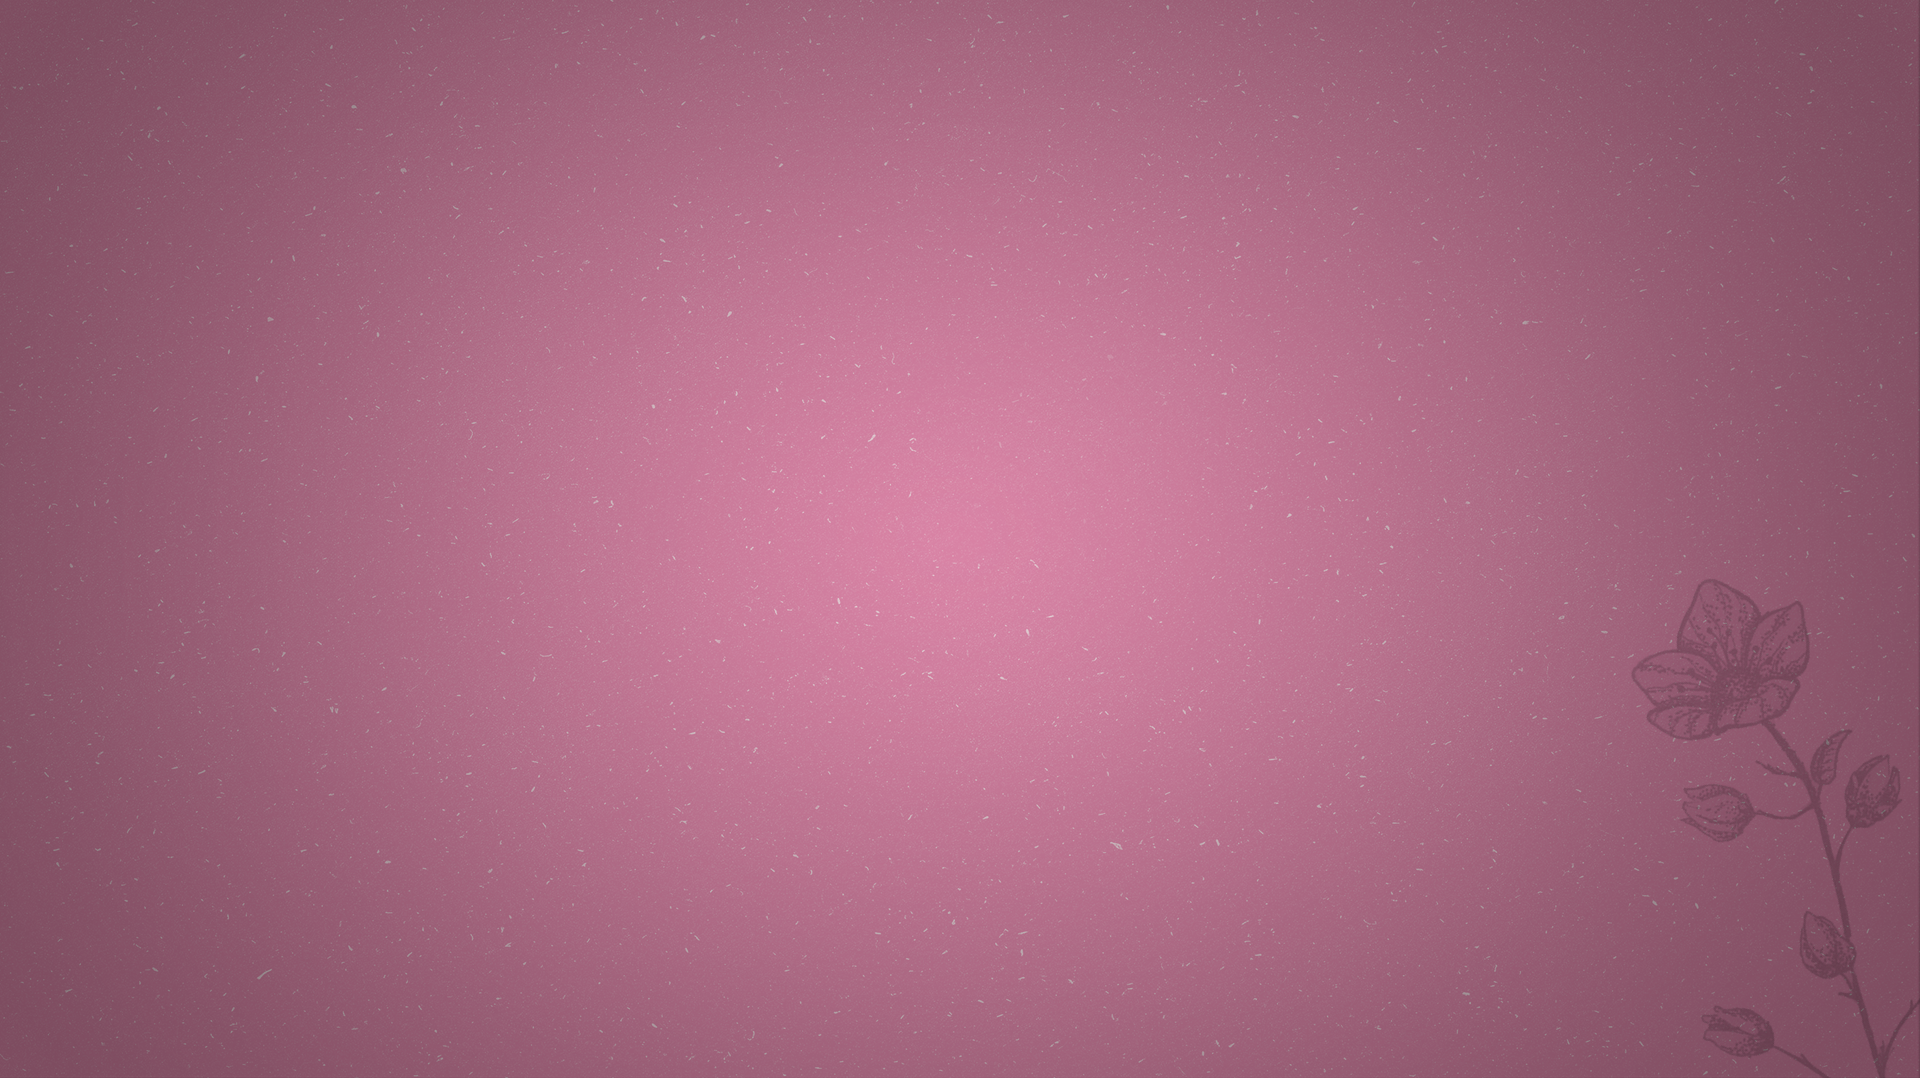 Textured pink background